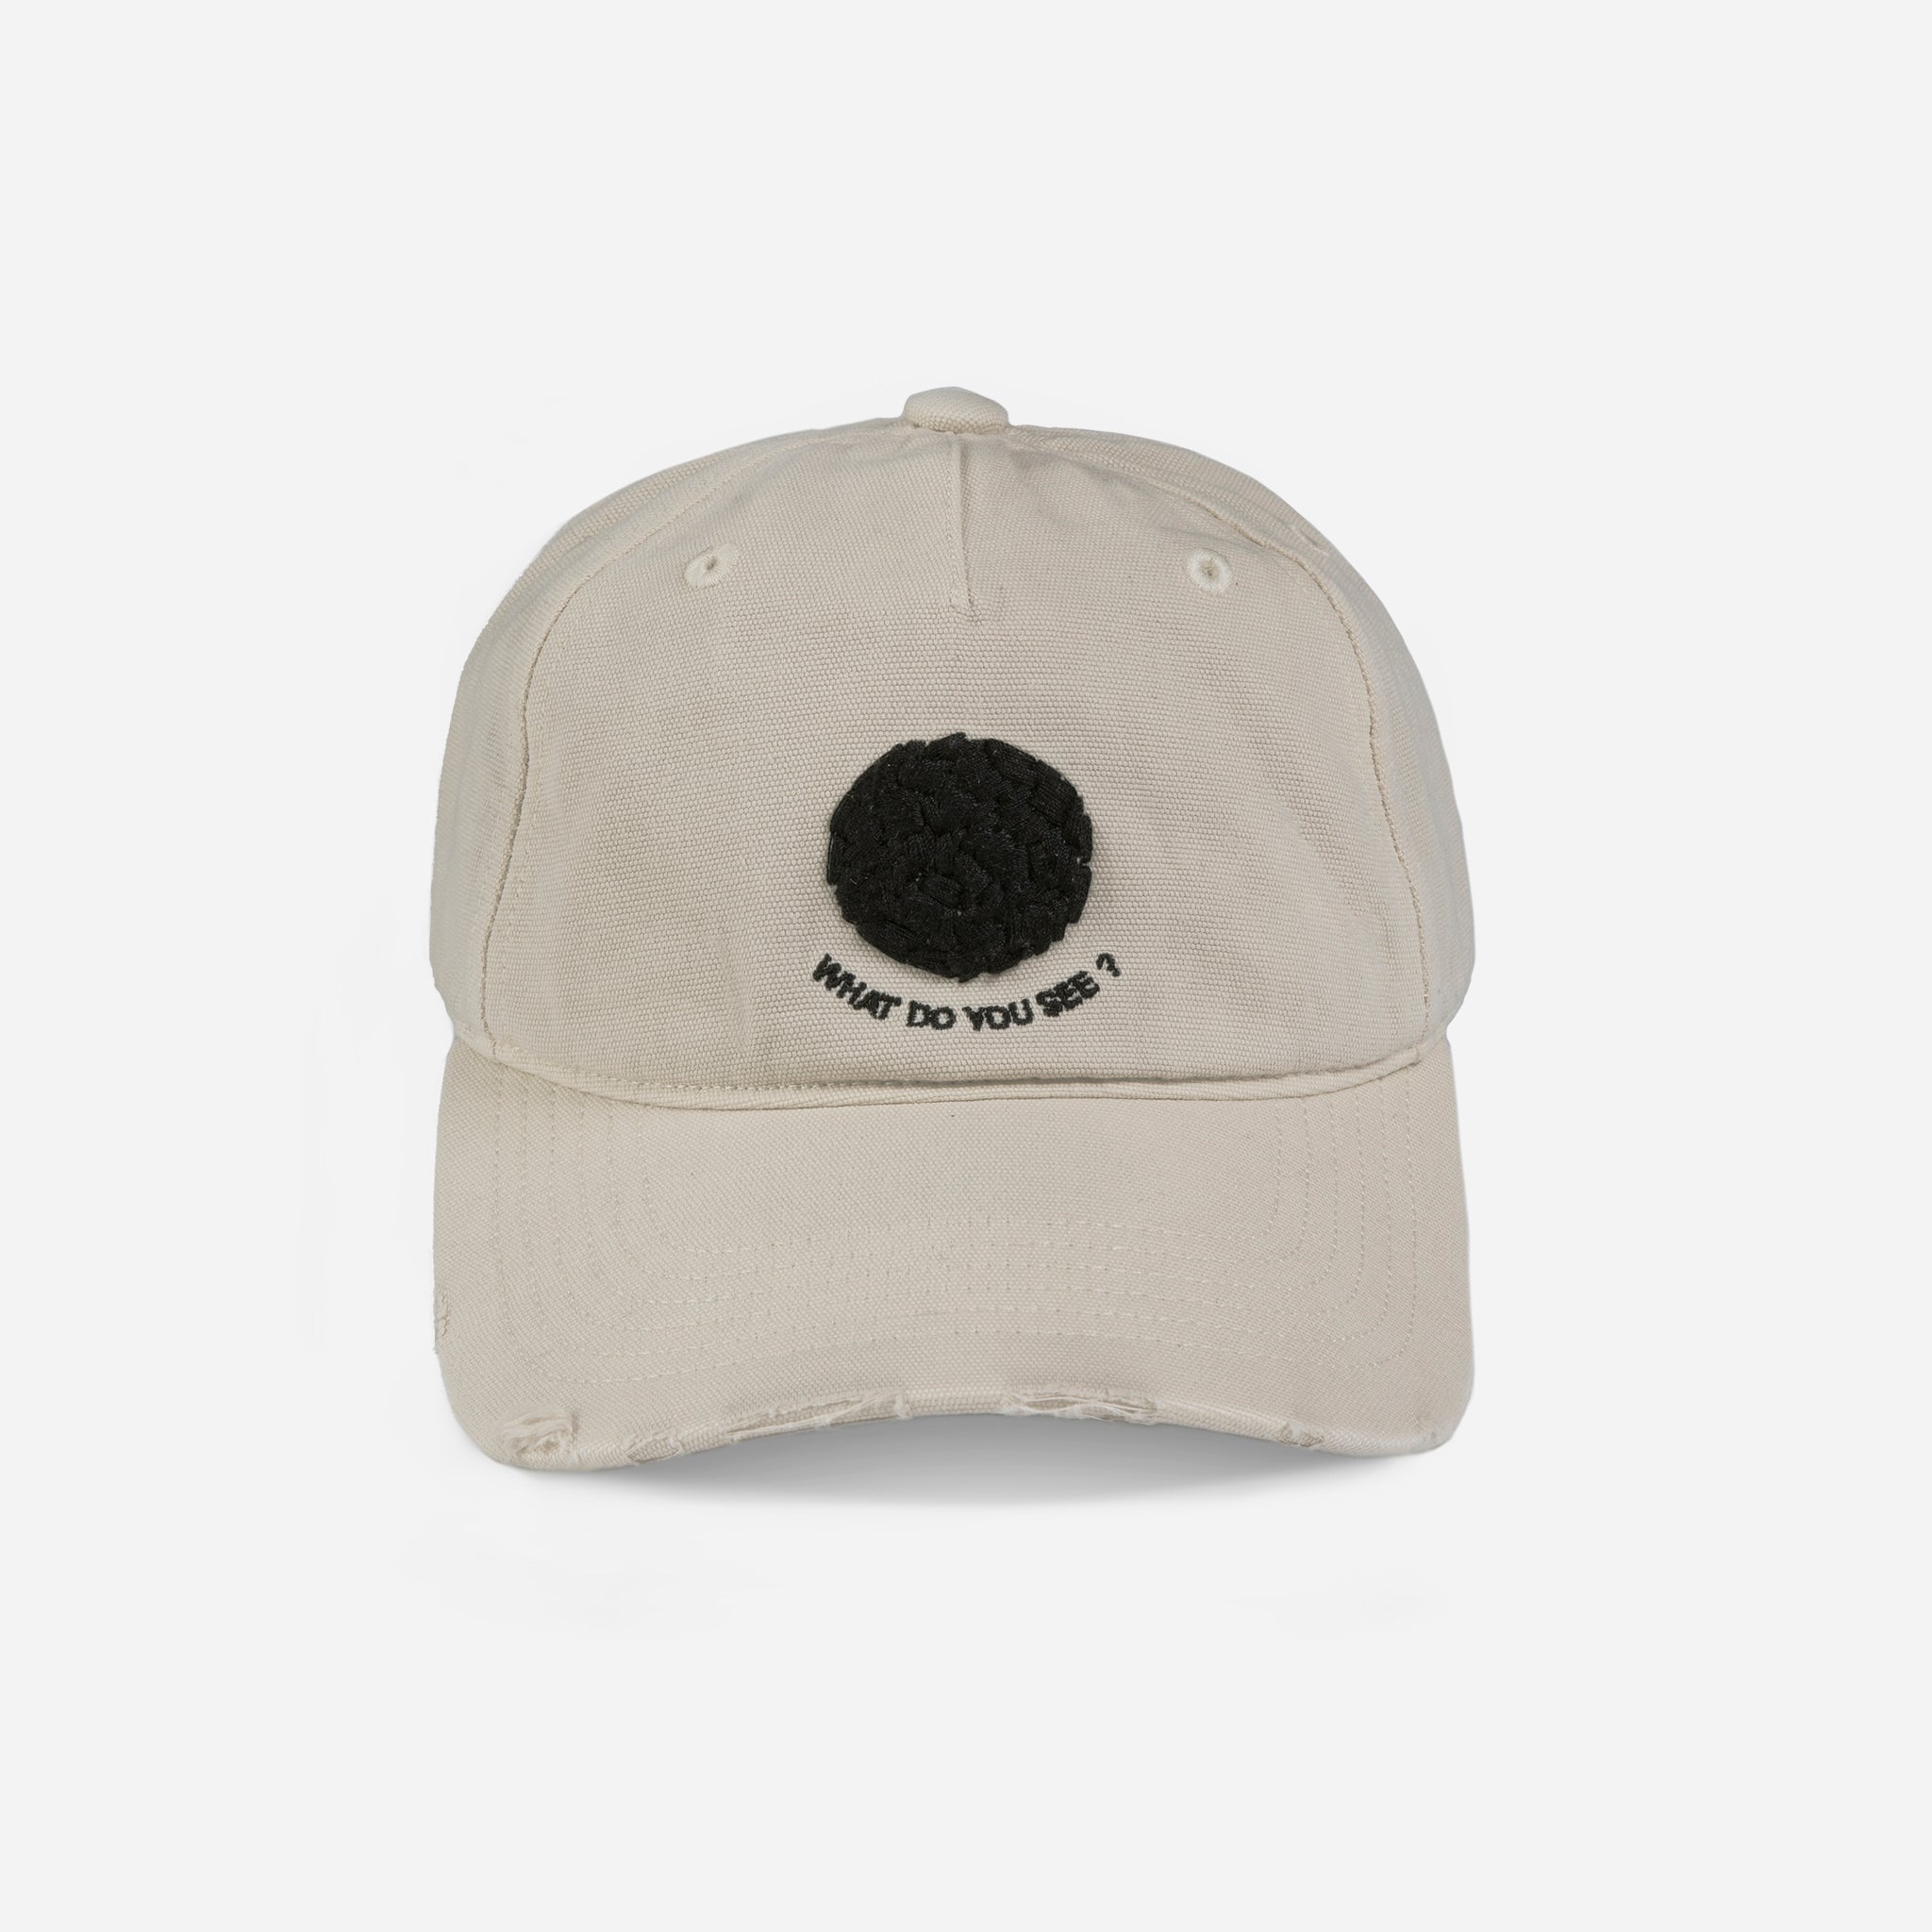 ADOT CAP